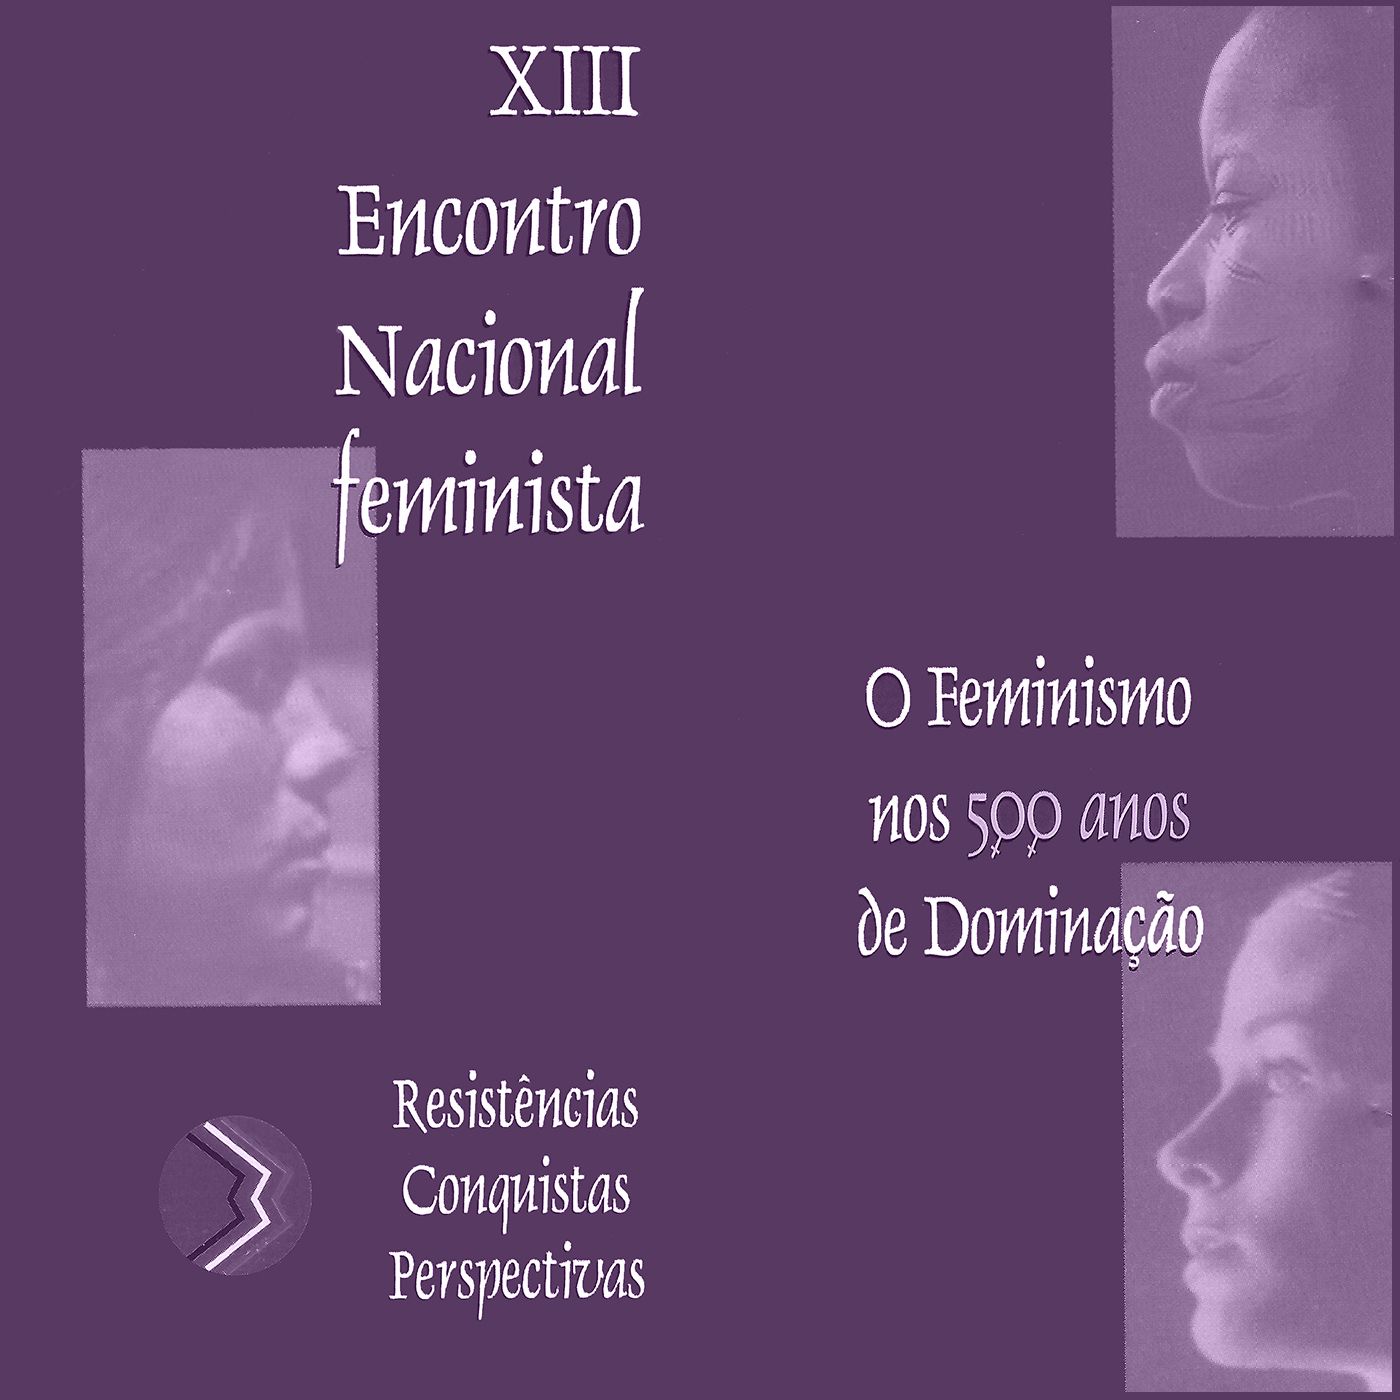 XIII Encontro Nacional Feminista - Eps. #2